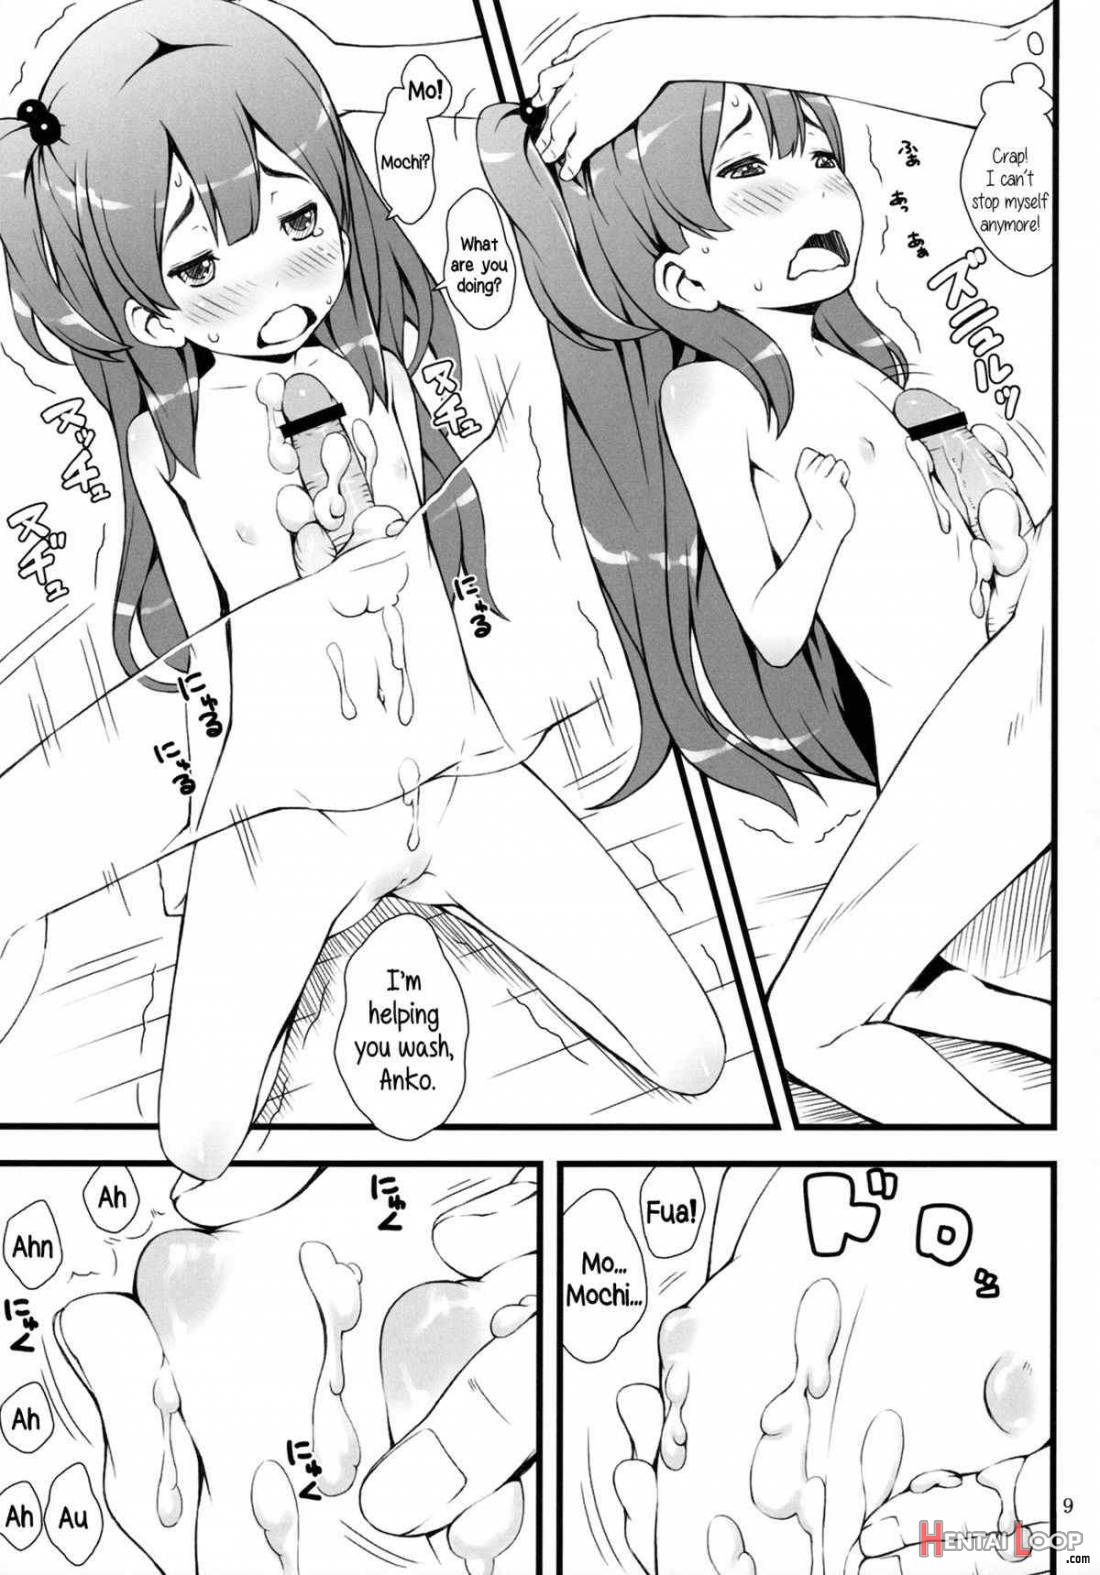 mochi-mochi anko chan page 8